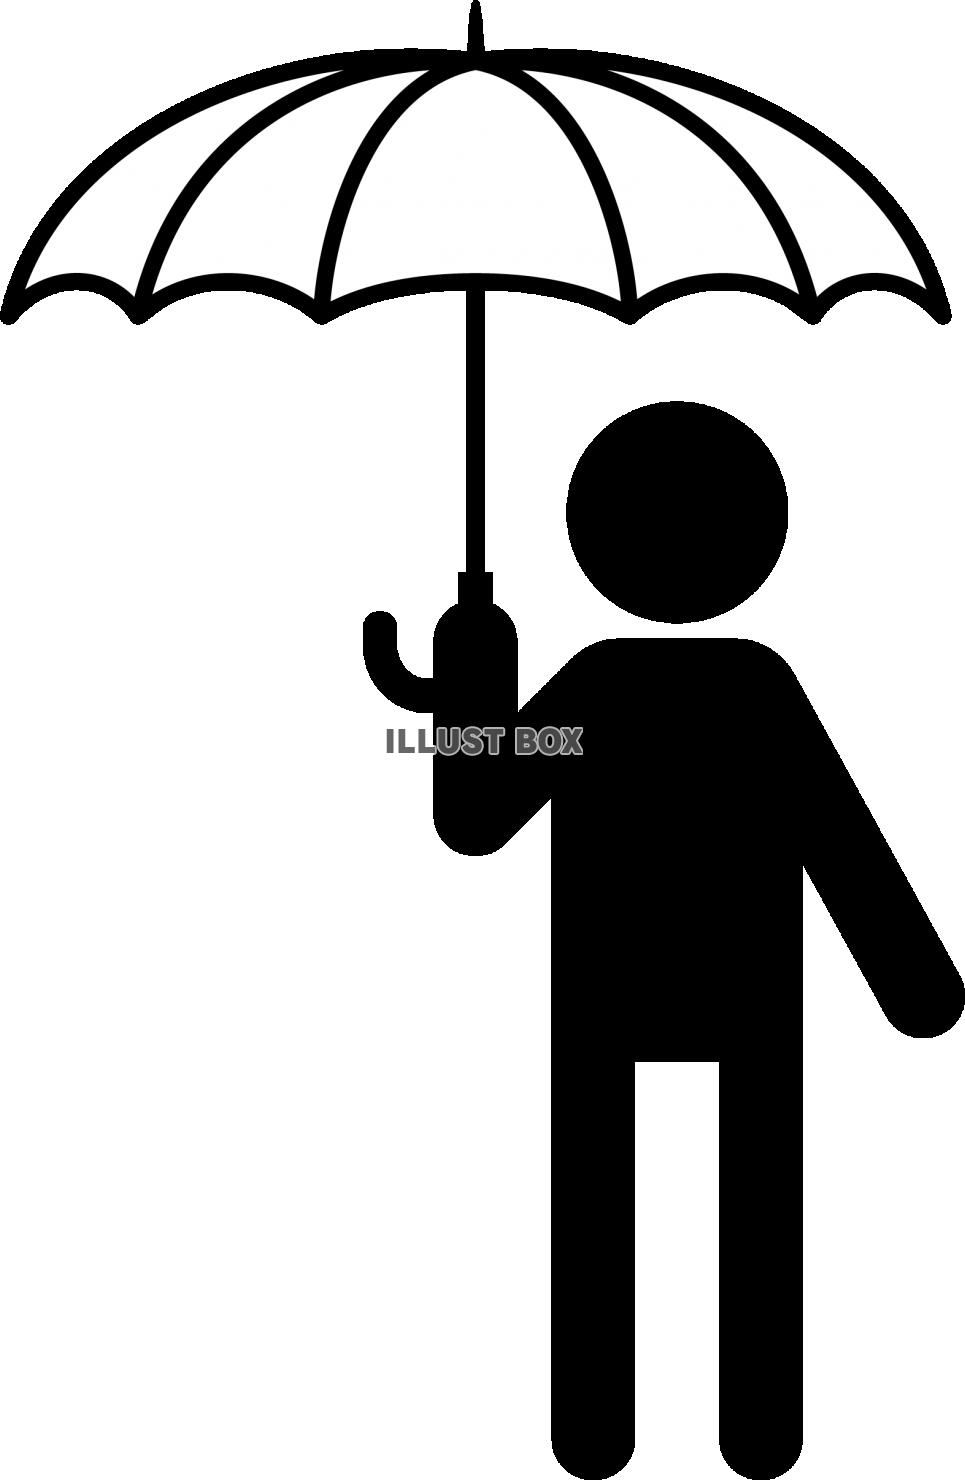 無料イラスト 傘をさす人 ピクトグラム